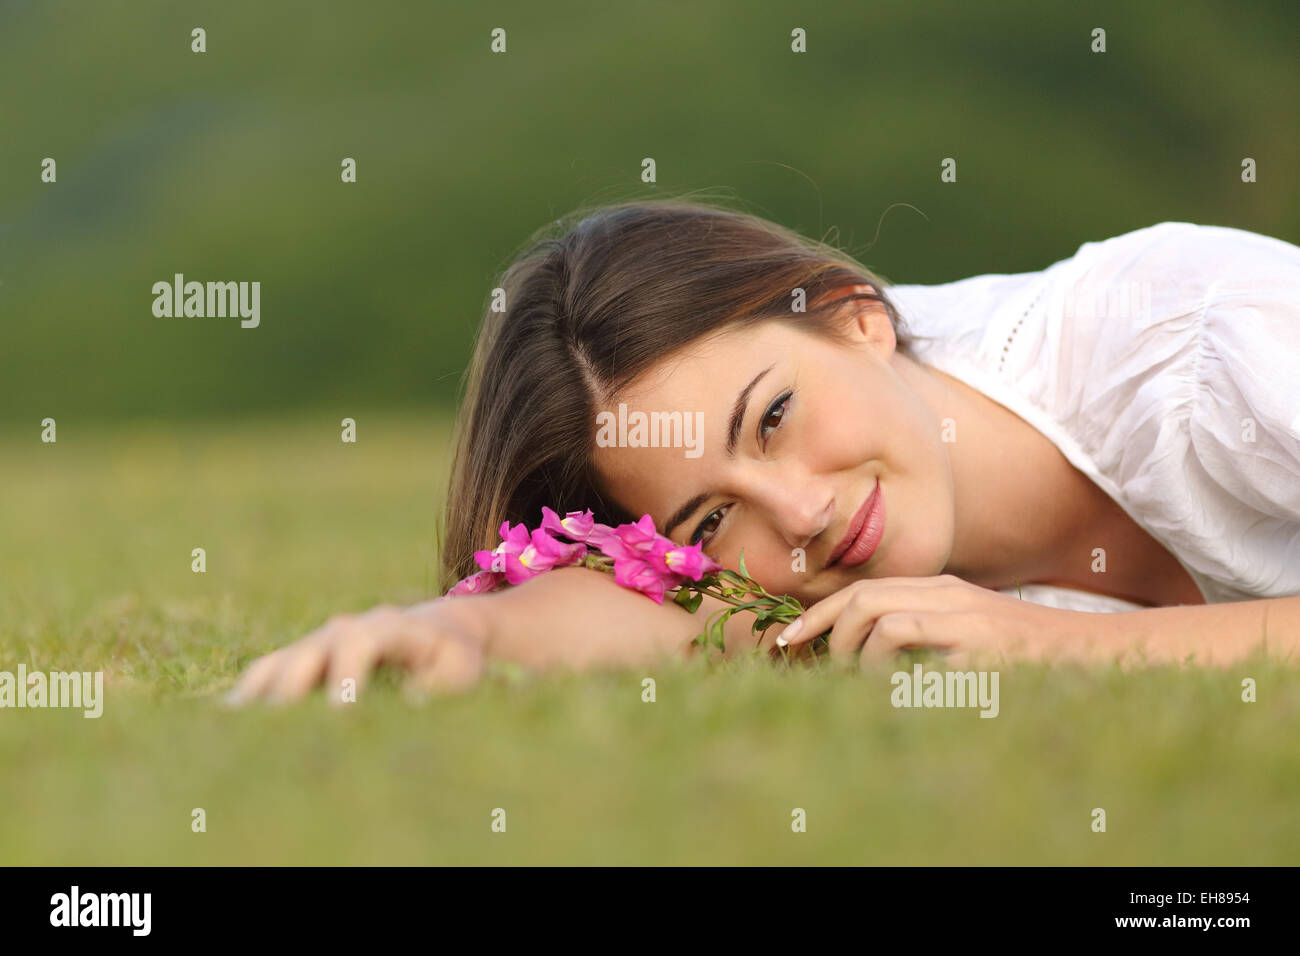 Entspannte Frau ruht auf dem grünen Rasen mit Blumen in einem Park mit einem grünen Hintergrund Stockfoto